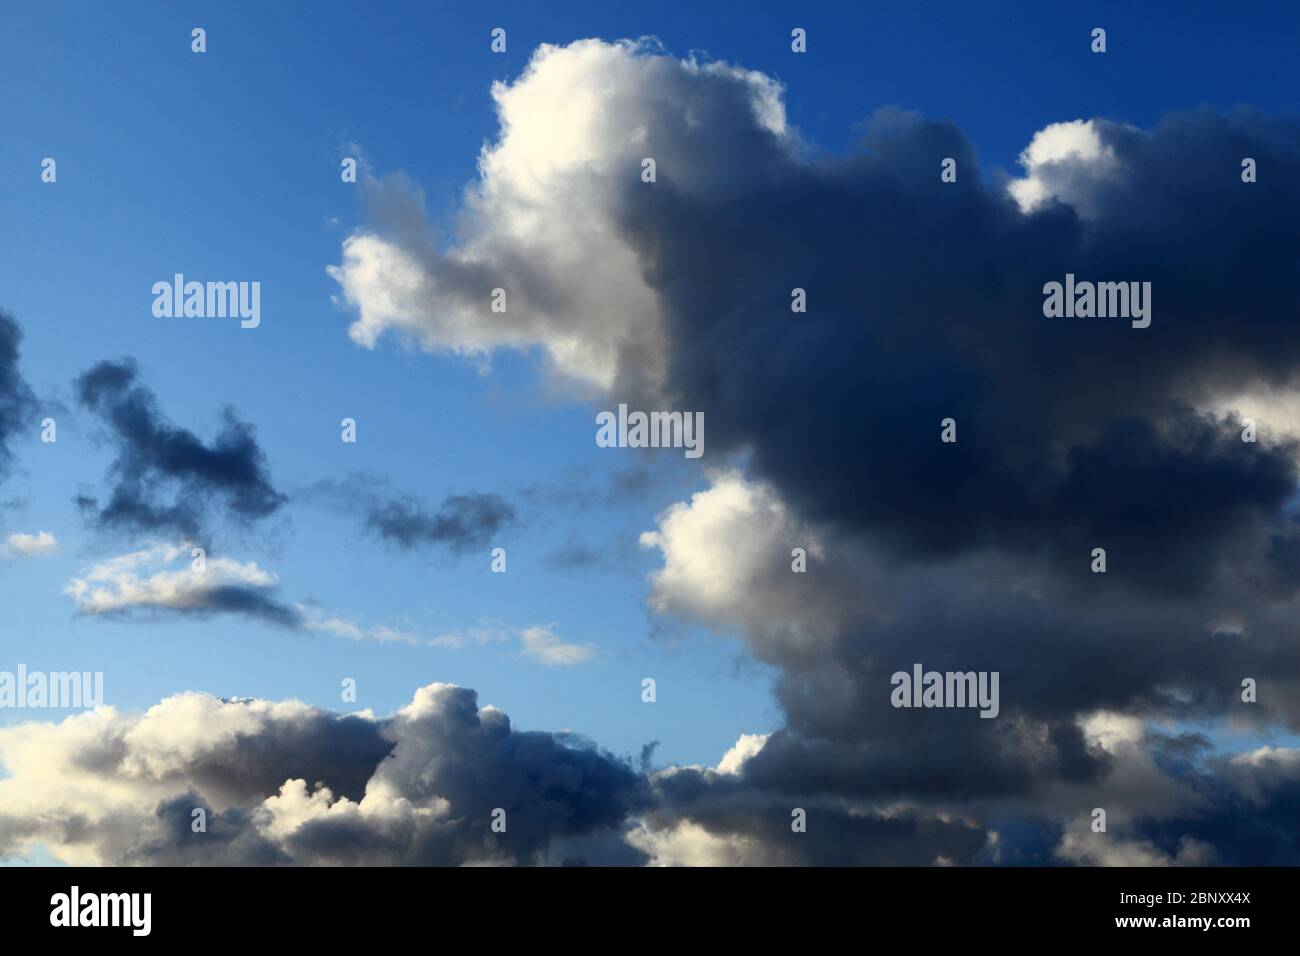 Sombre, nuage, nuages, ciel bleu, météo, météorologie, ciel, ciel Banque D'Images